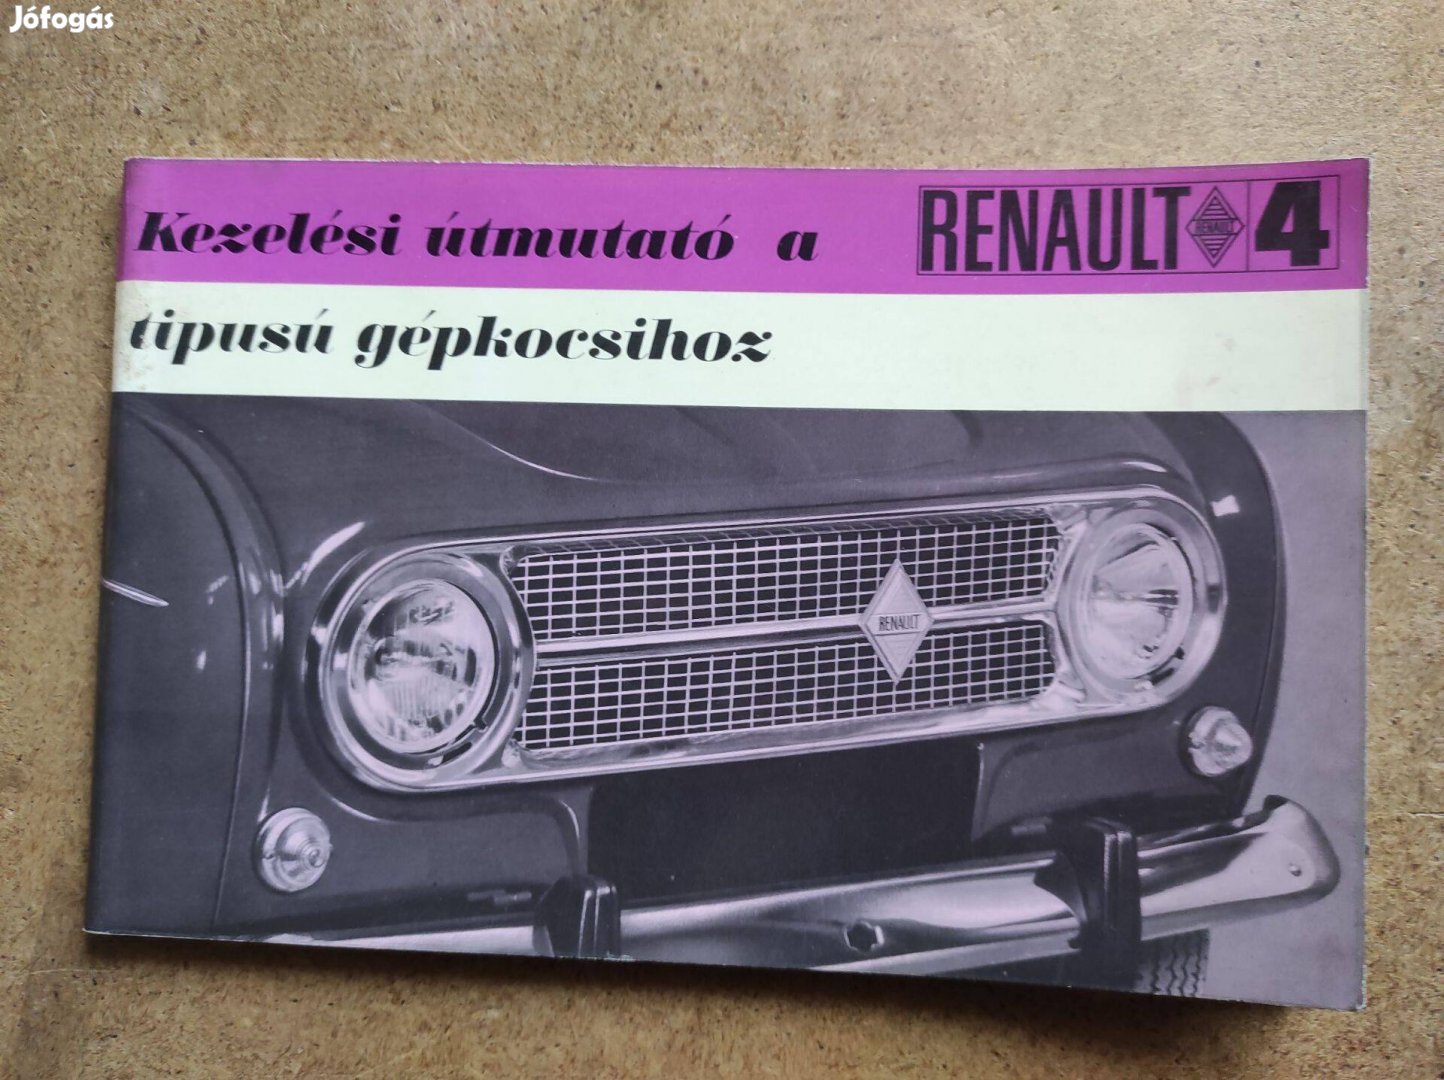 Renault 4 kezelési útmutató